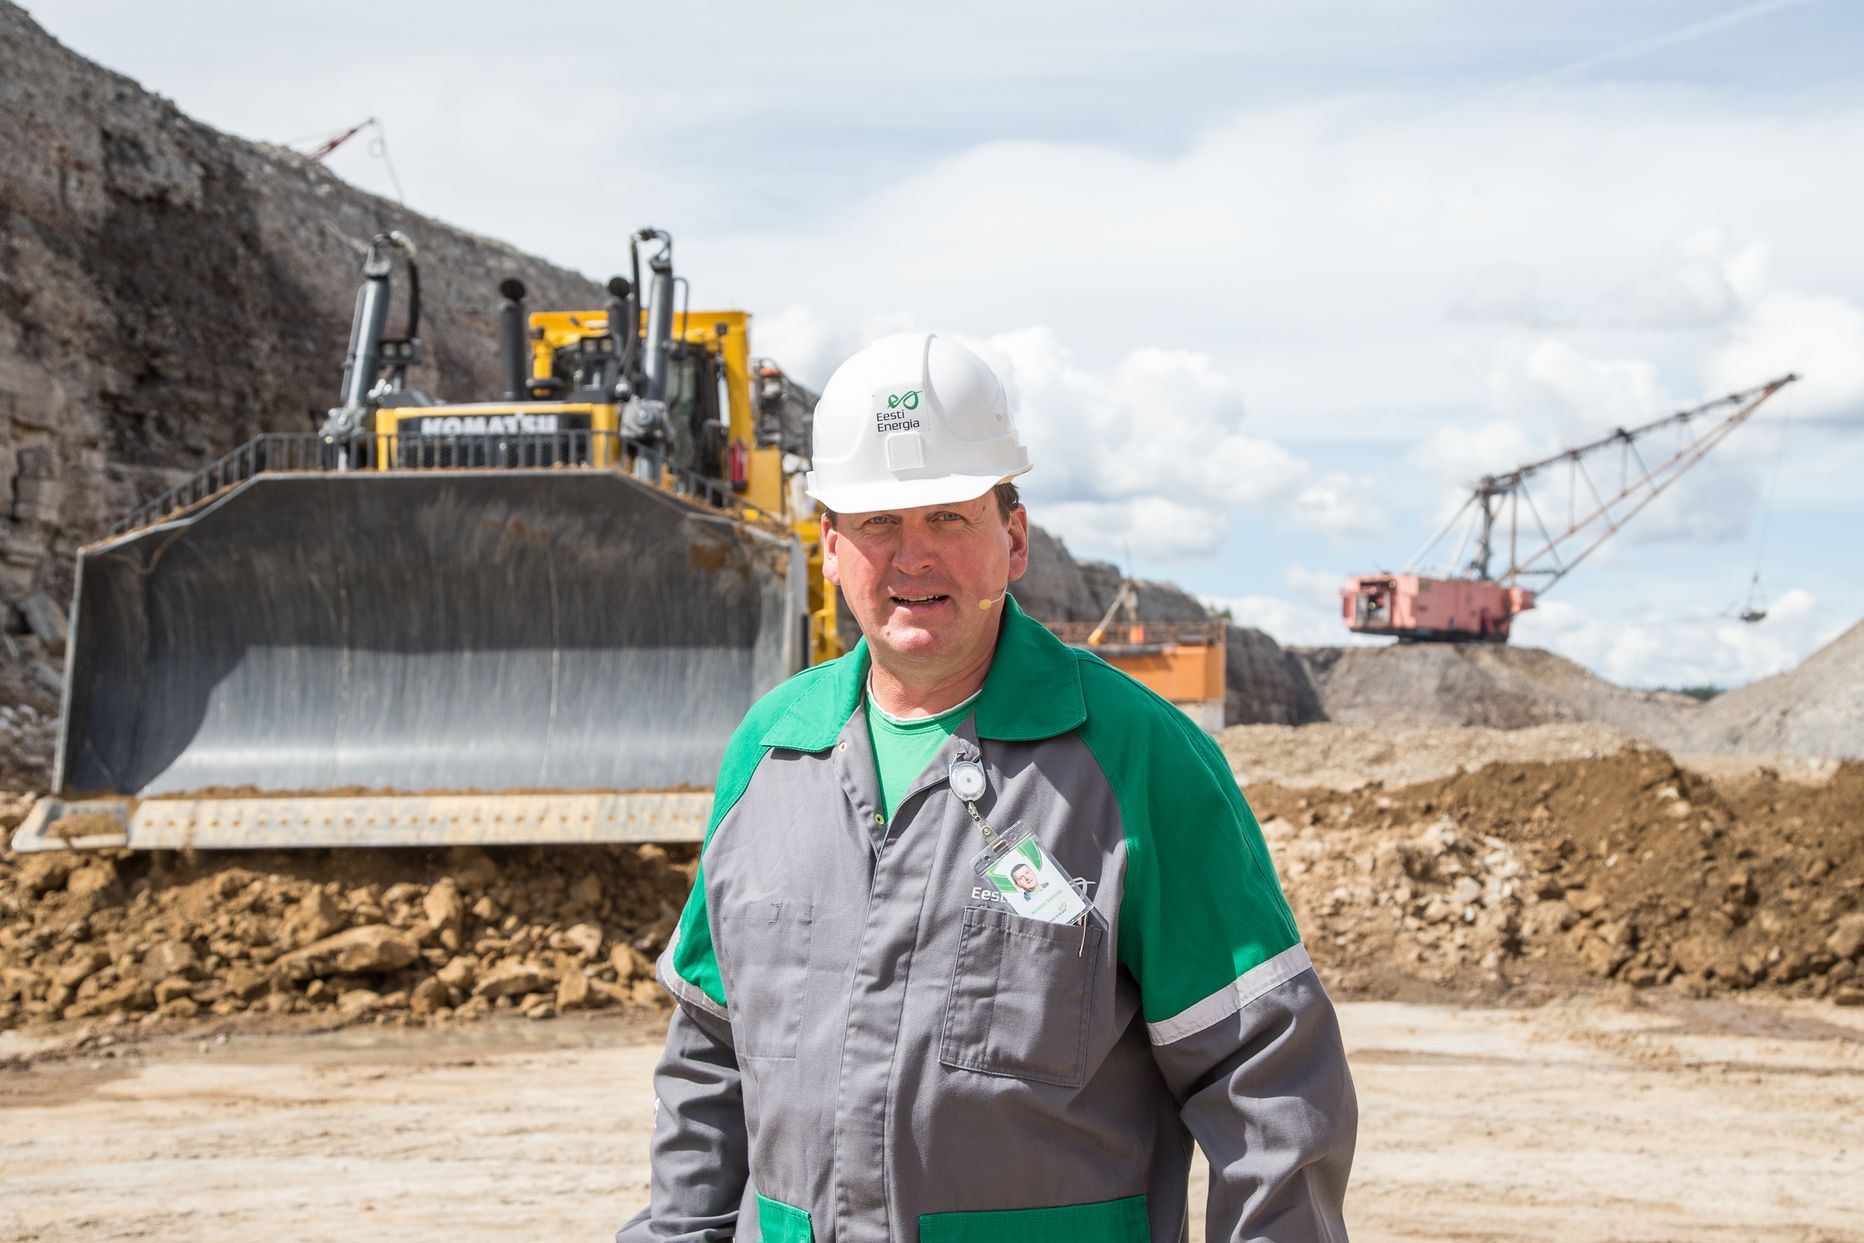 Андрес Вайнола как руководитель "Enefit Kaevandused" в последние годы провел несколько больших реорганизаций и сокращений на шахтах. Теперь и его рабочее место становится лишним.